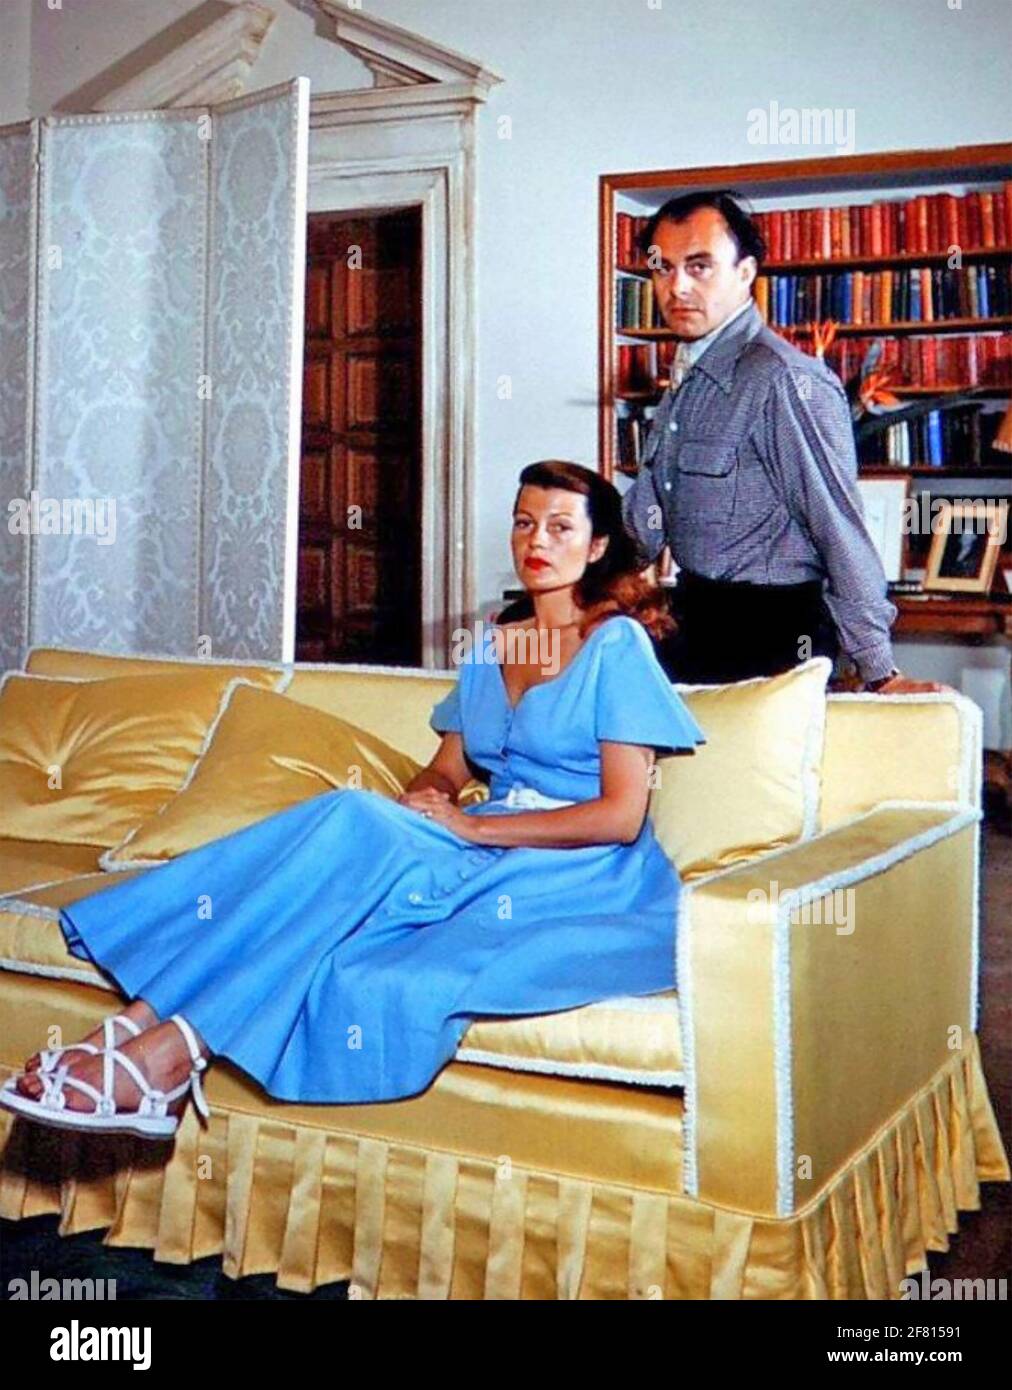 RITA HAYWORTH actrice américaine de film avec son troisième mari Prince Aly Khan environ 1950 avec la souche dans leur mariage clairement montrer. Banque D'Images